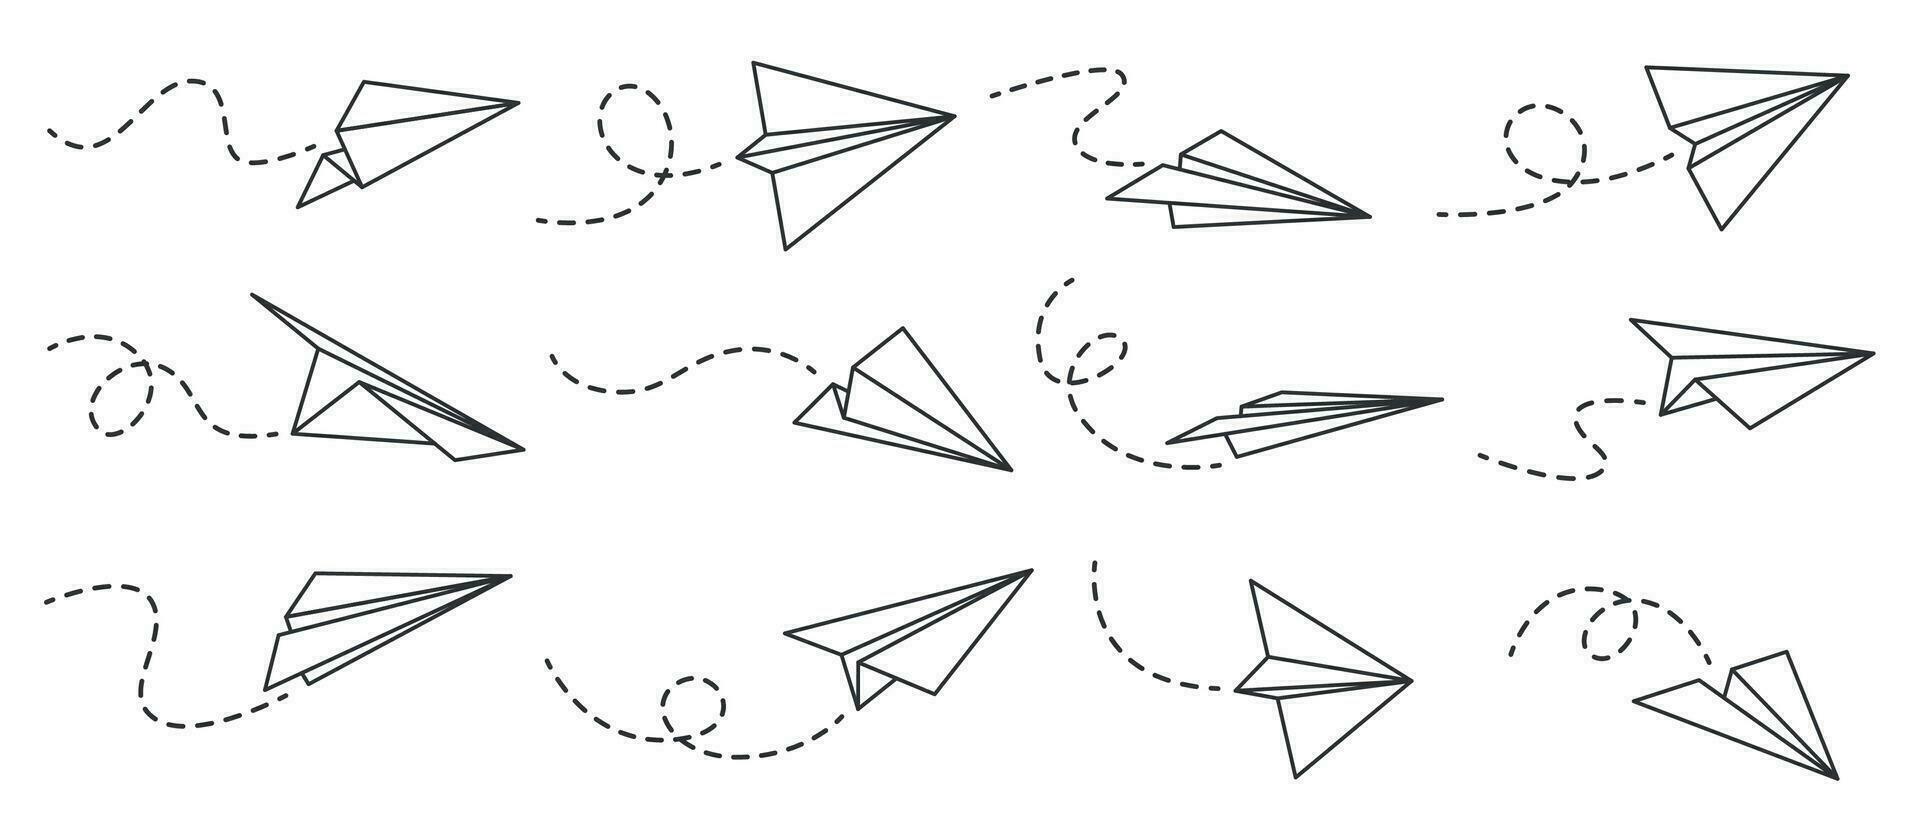 Papier Flugzeug. Gliederung fliegend Flugzeuge von anders Winkel und Richtung mit gepunktet Schiene, Reise oder Botschaft Symbole, linear Vektor einstellen